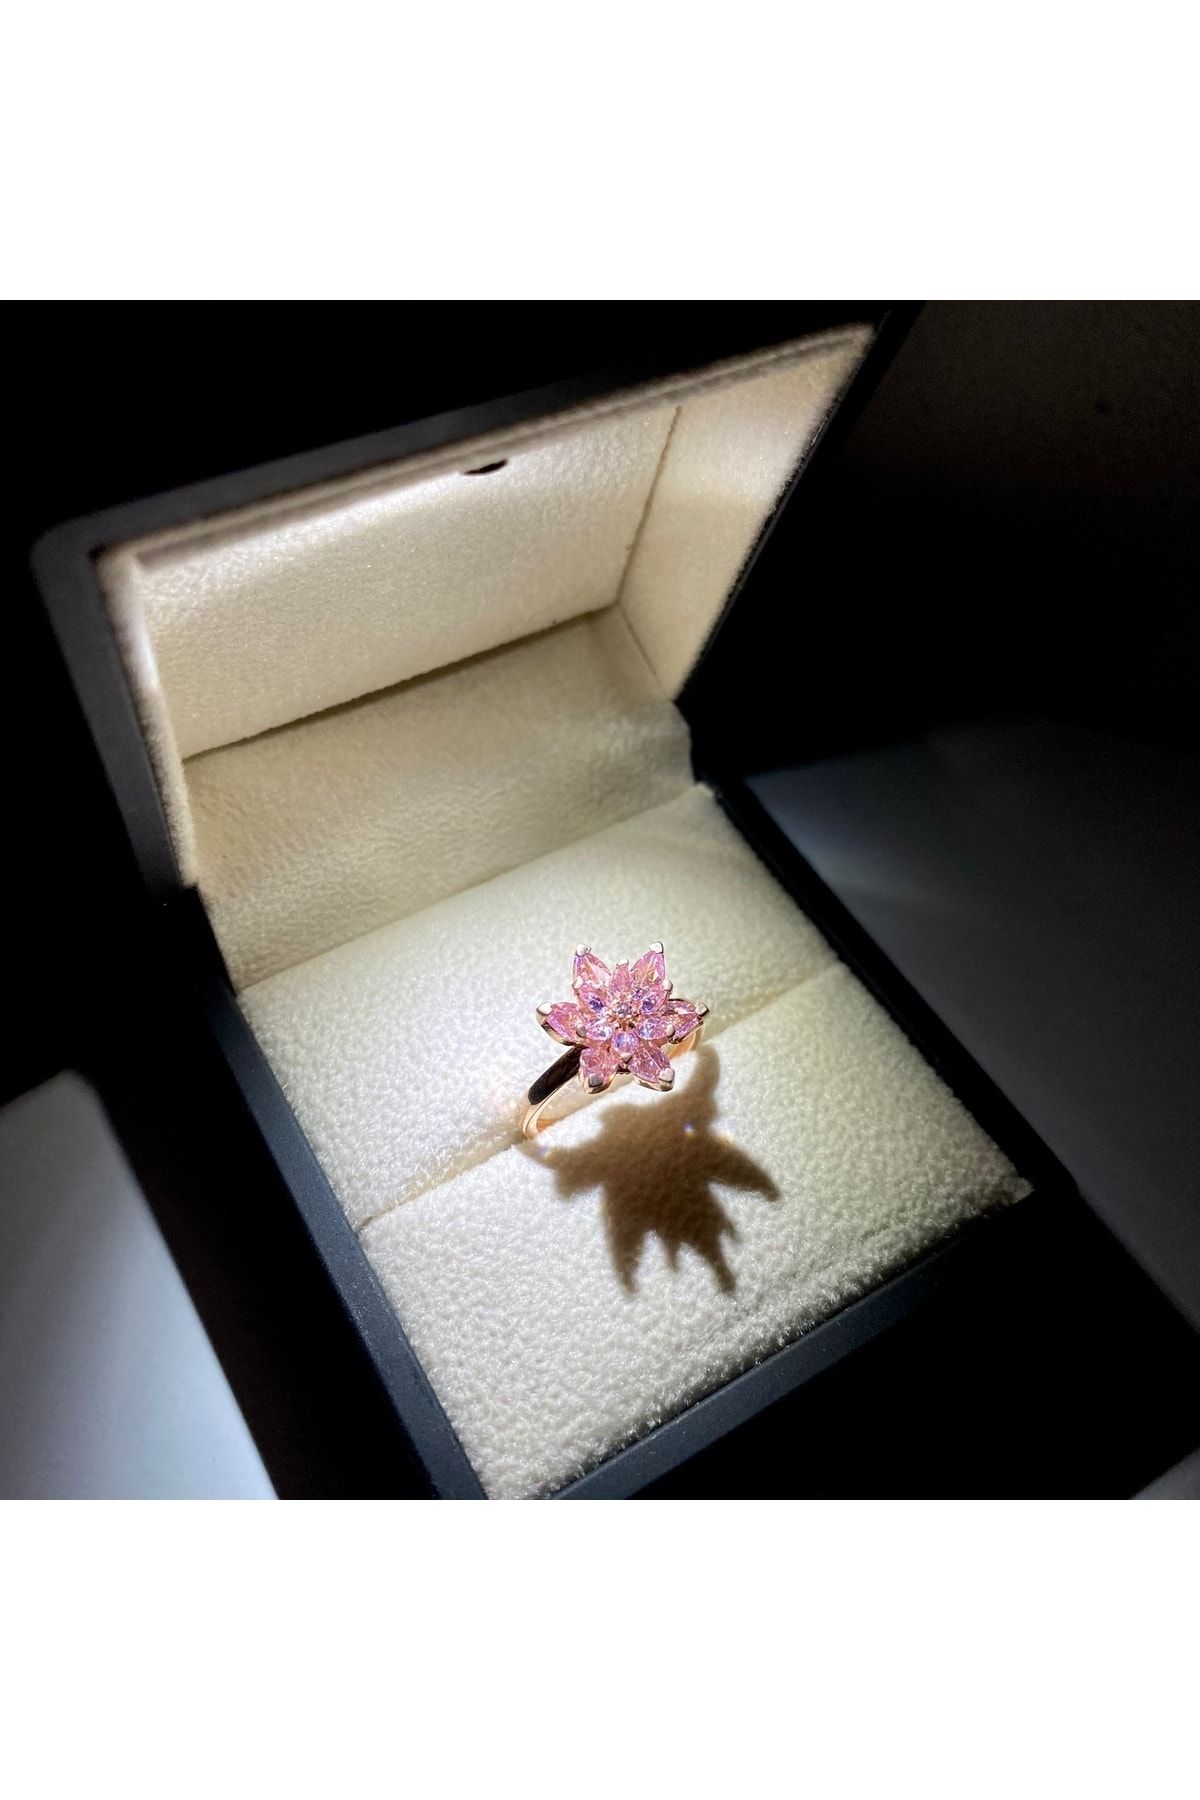 LOTUS JW Lotus Çiçeği Yüzük & Işıklı Yüzük Kutusu - 925 Ayar Gümüş Yüzük